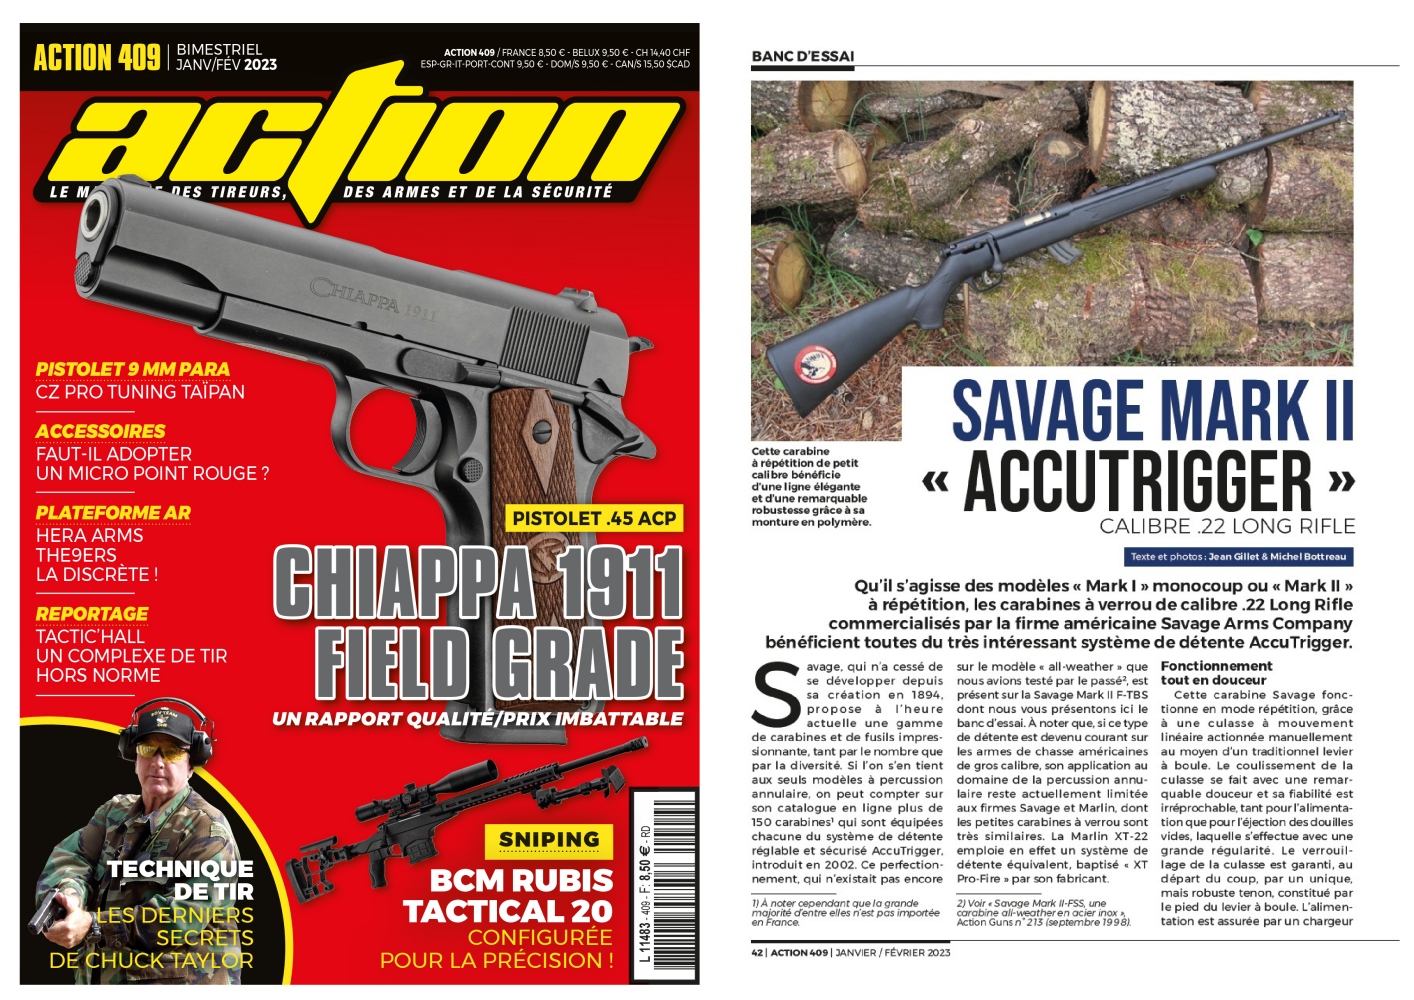 Le banc d’essai de la carabine Savage Mark II AccuTrigger a été publié sur 6 pages dans le magazine Action n°409 (janvier-février 2023).